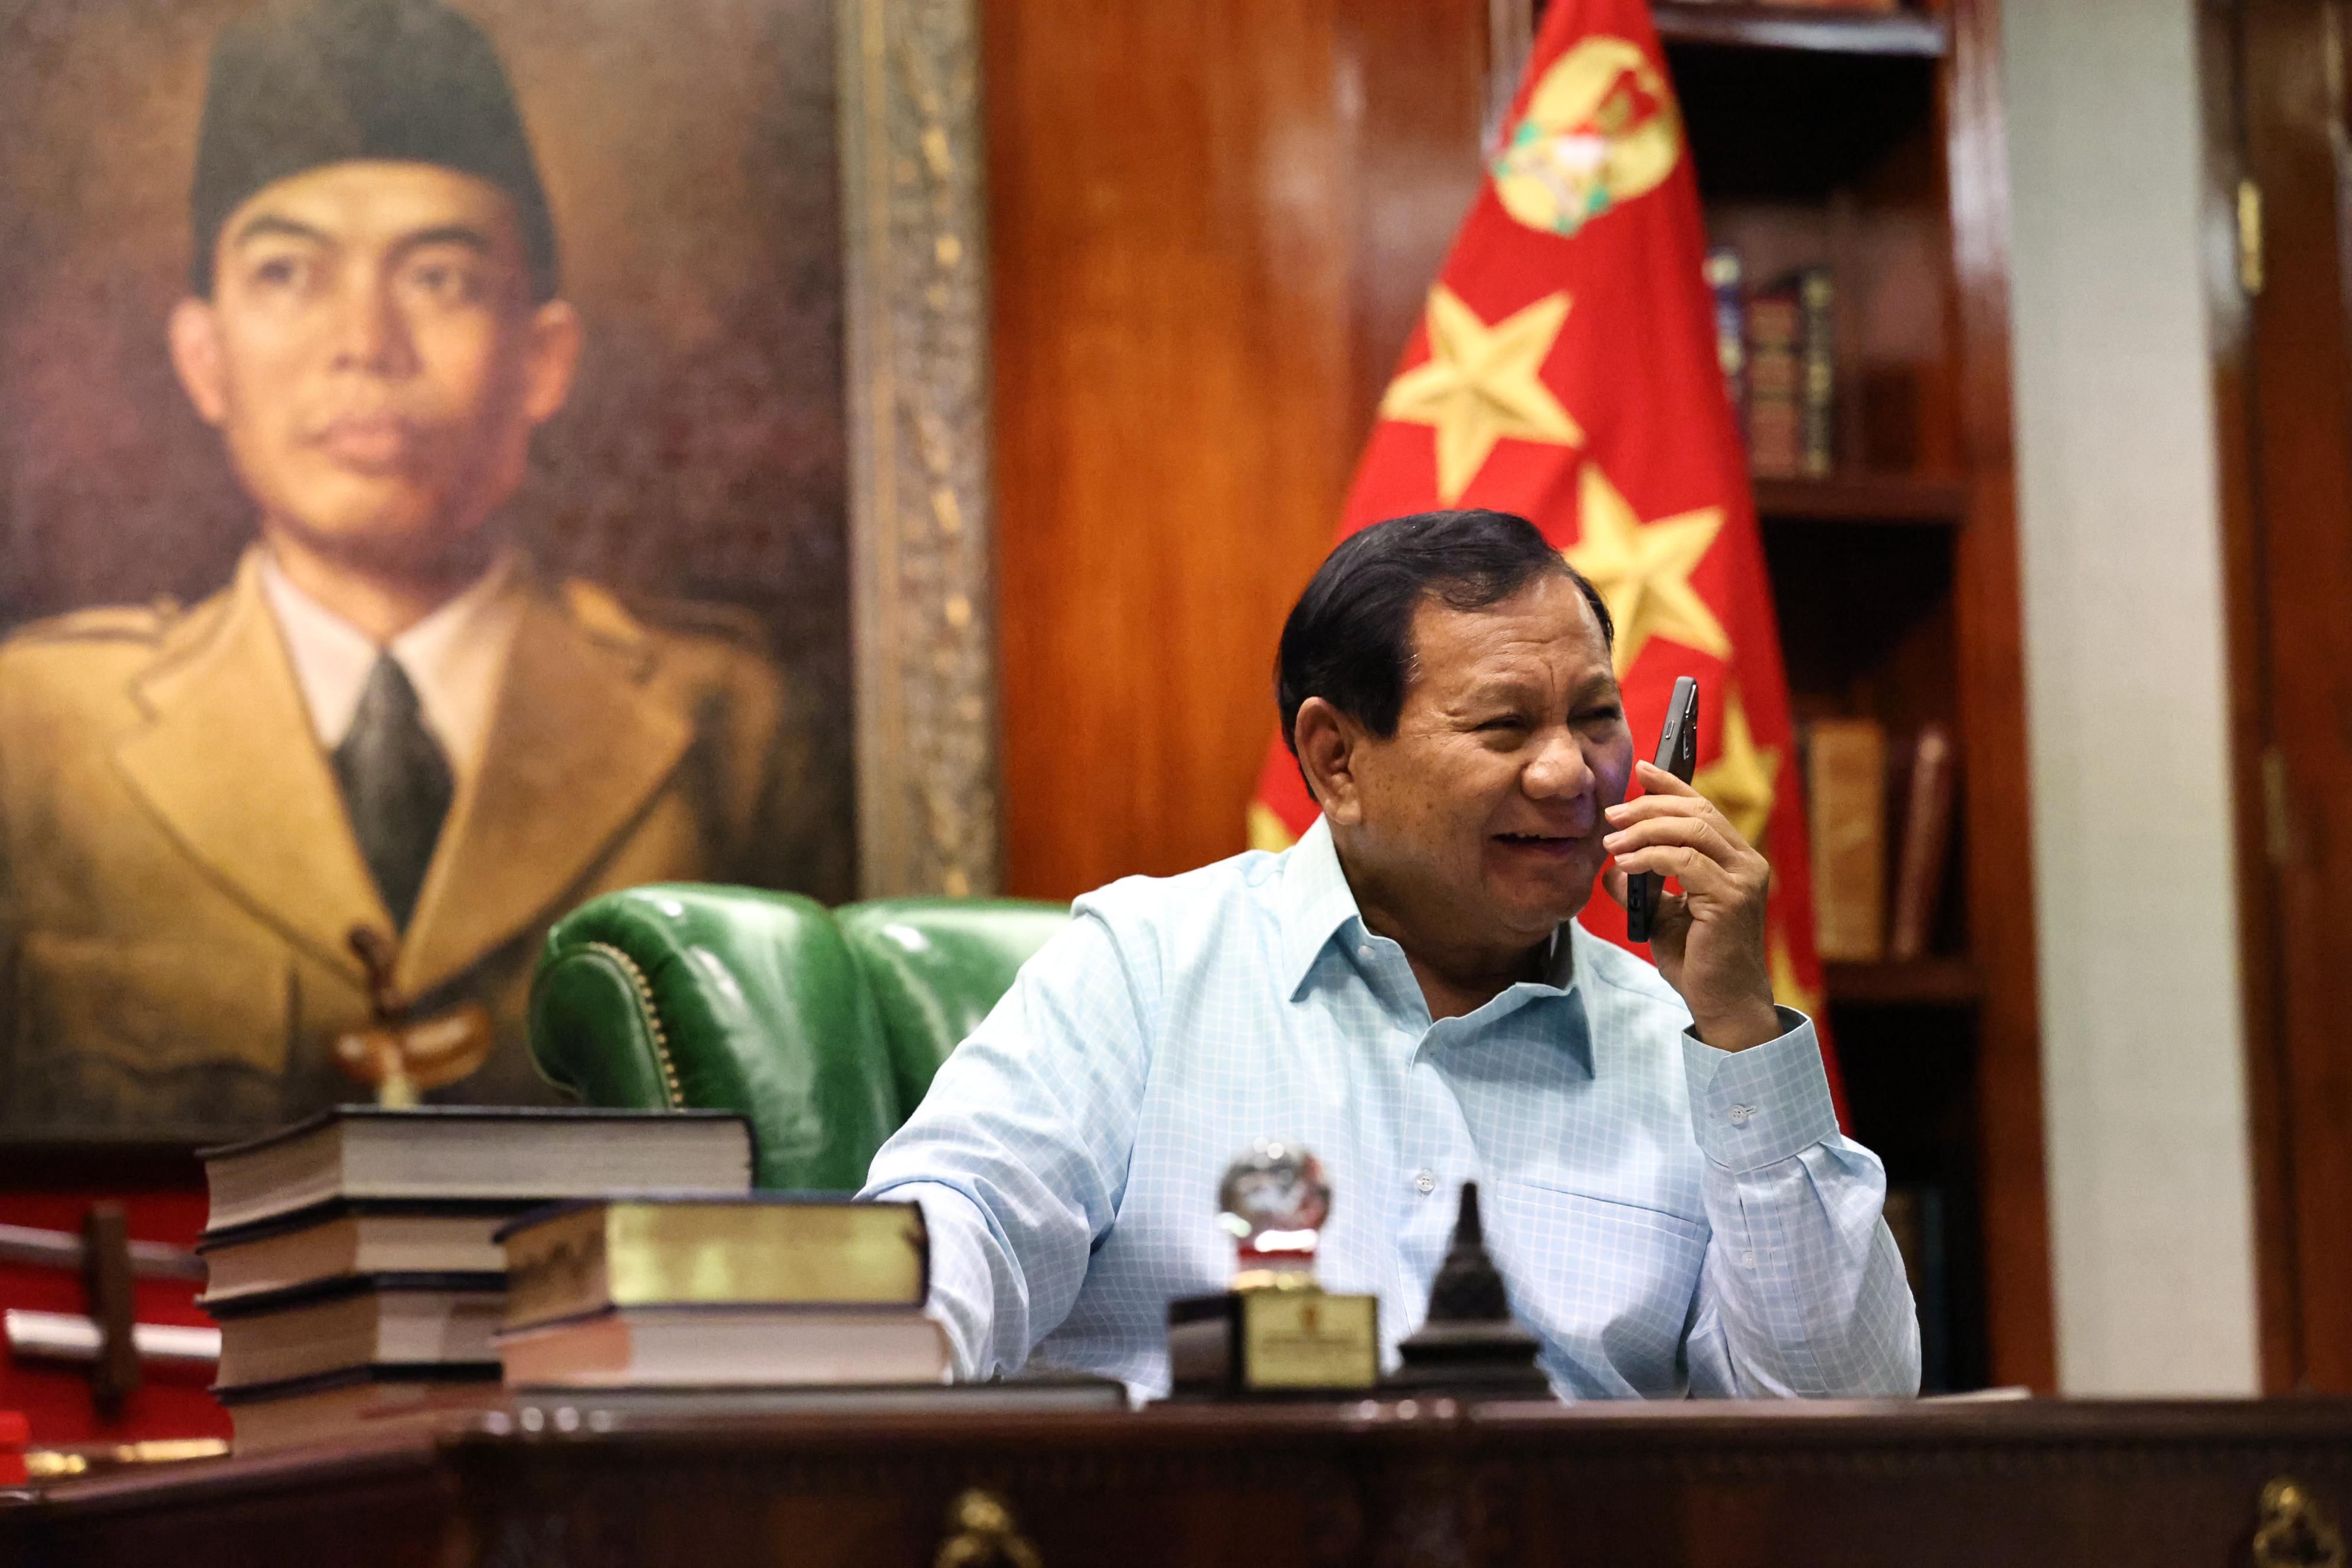 Jubir Ungkap Keinginan Prabowo Duduk Bareng Para Presiden RI: Jokowi, SBY, hingga Megawati